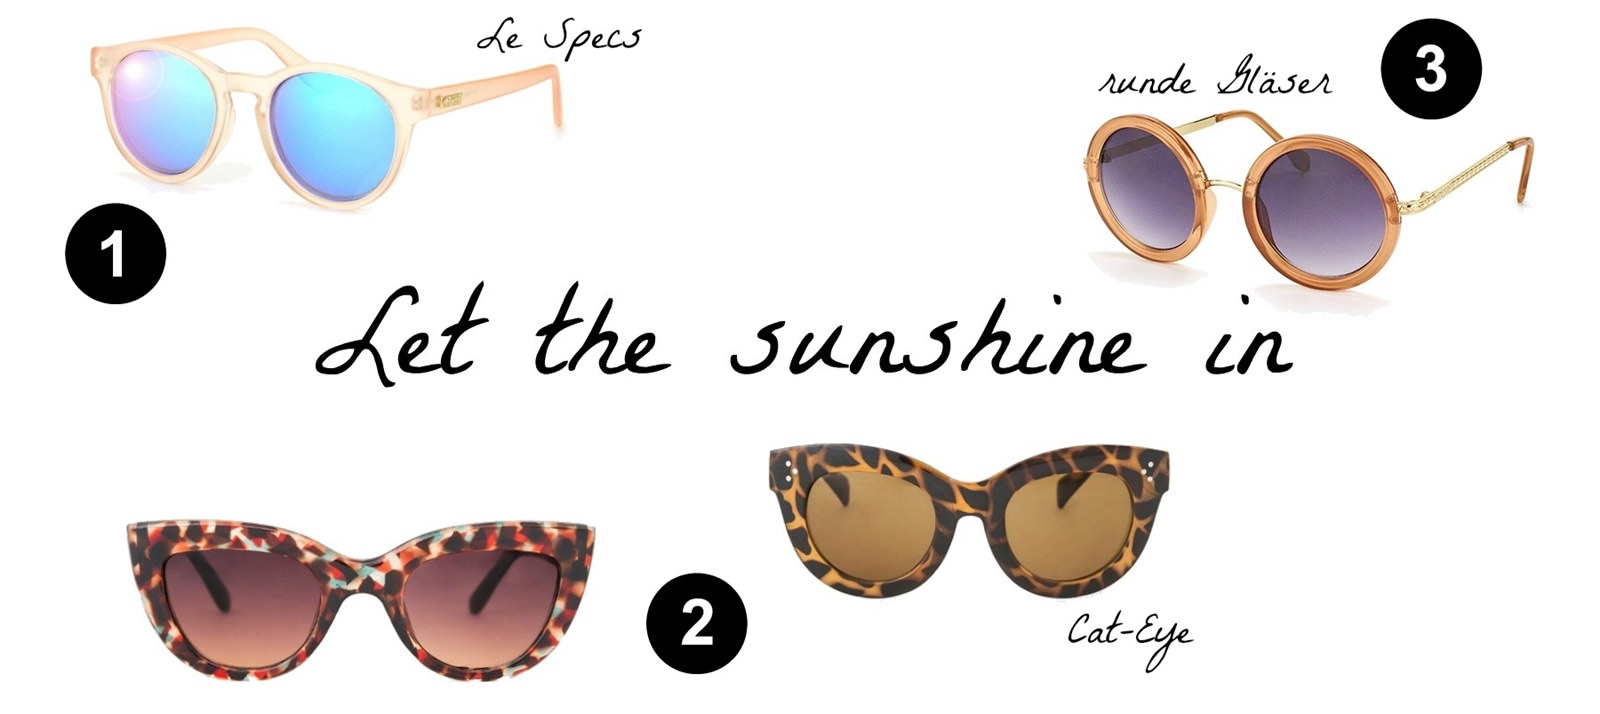 Des Belles Choses Top 5 - Sunglasses Trends 2015 1